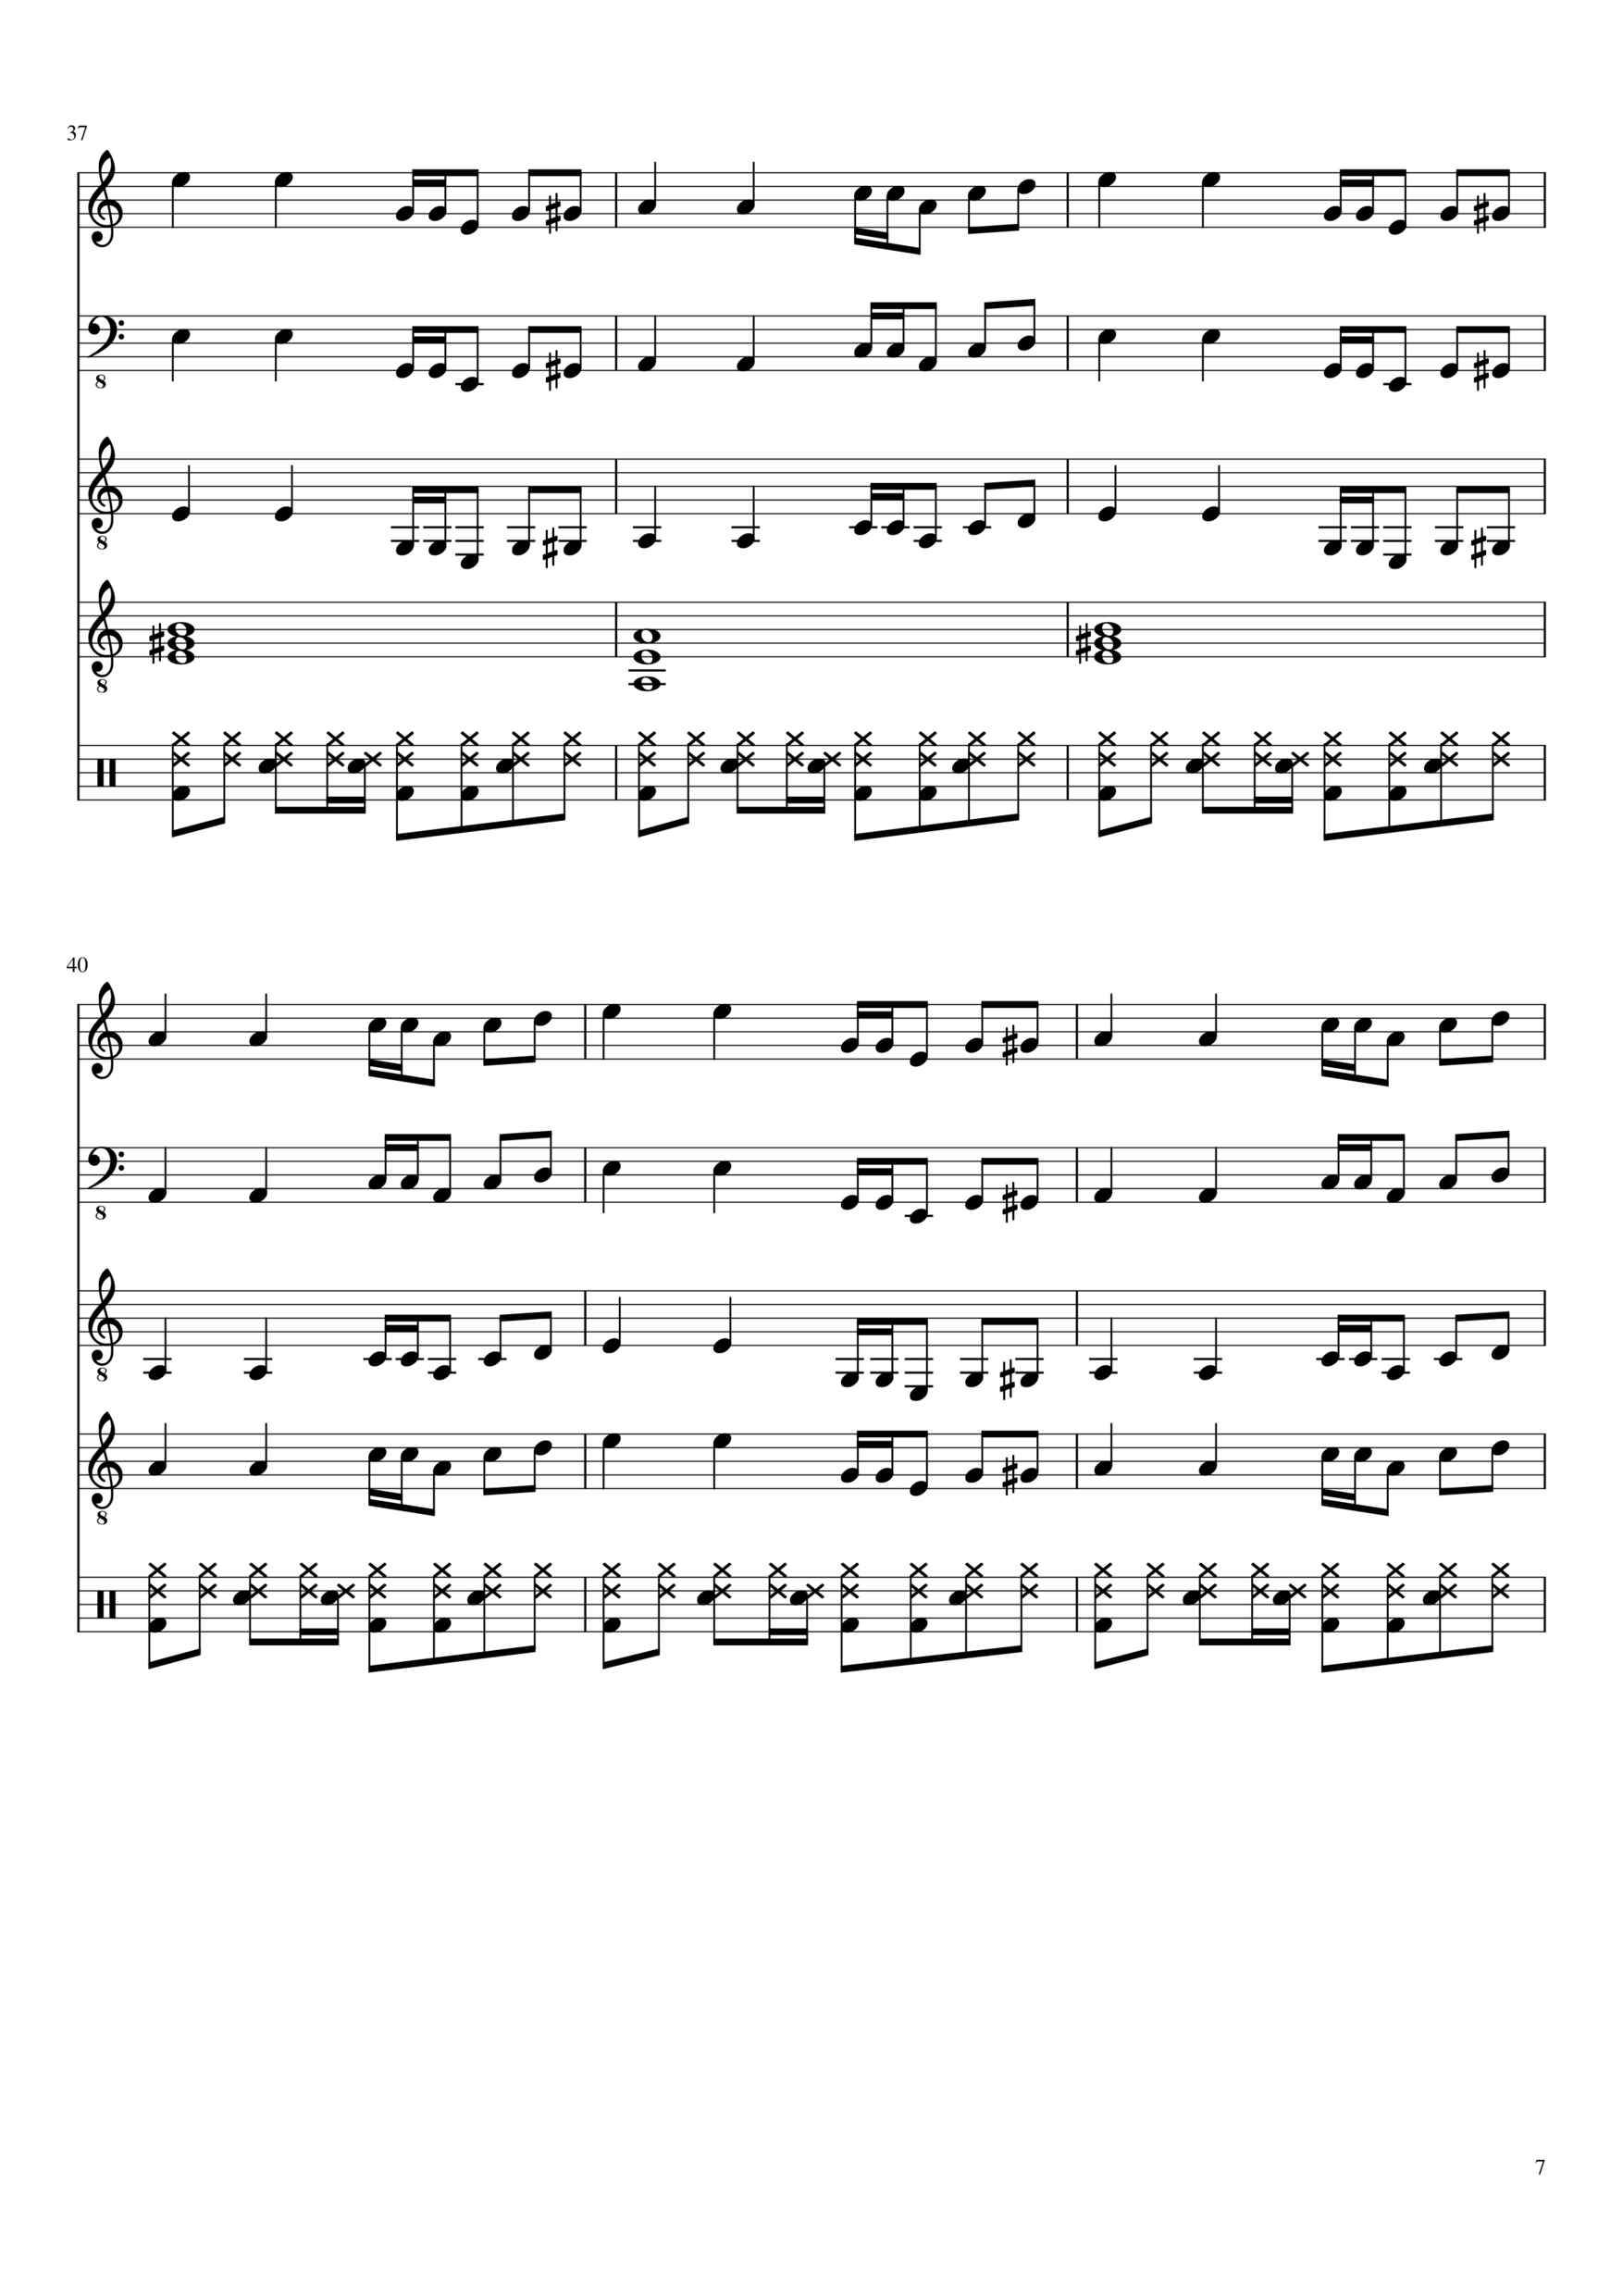 Vechnaya lyubov slide, Image 7